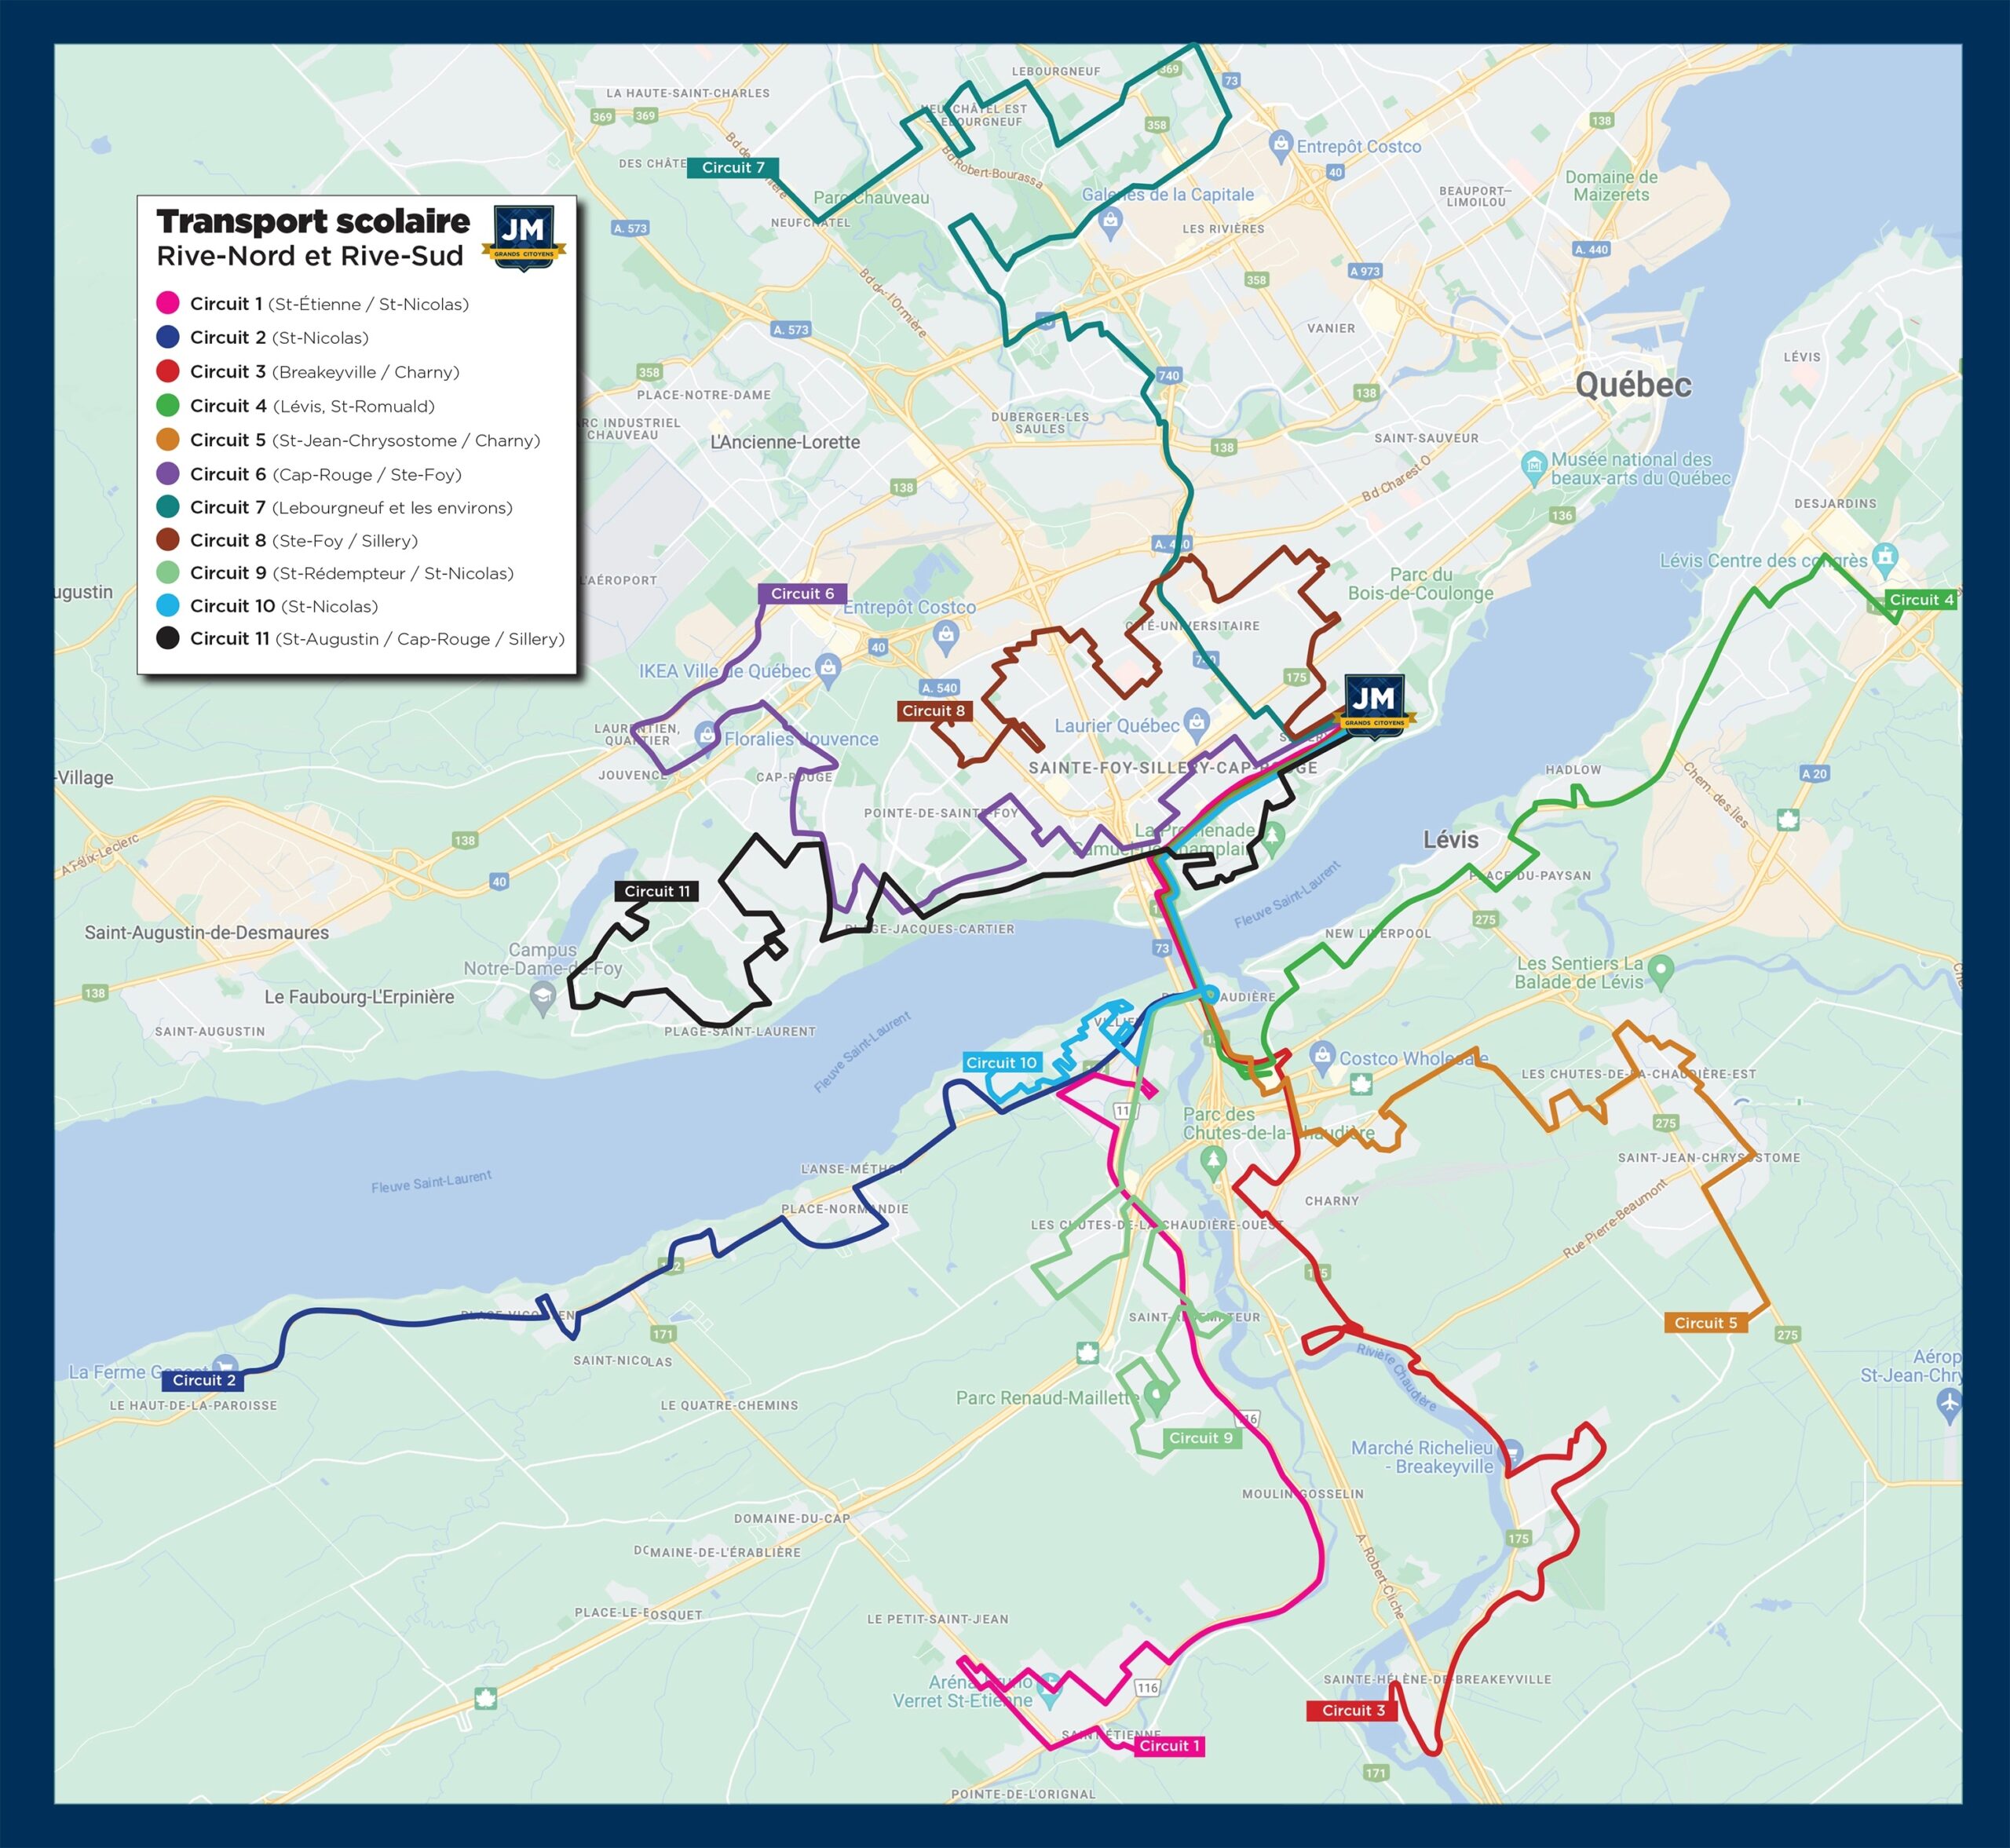 Aussi, les autobus effectuent les trajets suivants :

St-Étienne / St-Nicolas
St-Nicolas
Breakeyville / Charny
Lévis, St-Romuald
St-Jean-Chrysostome / Charny
Cap-Rouge / Ste-Foy
Lebourgneuf et les environs
Ste-Foy / Sillery
St-Rédempteur / St-Nicolas
St-Augustin / Cap-Rouge / Sillery